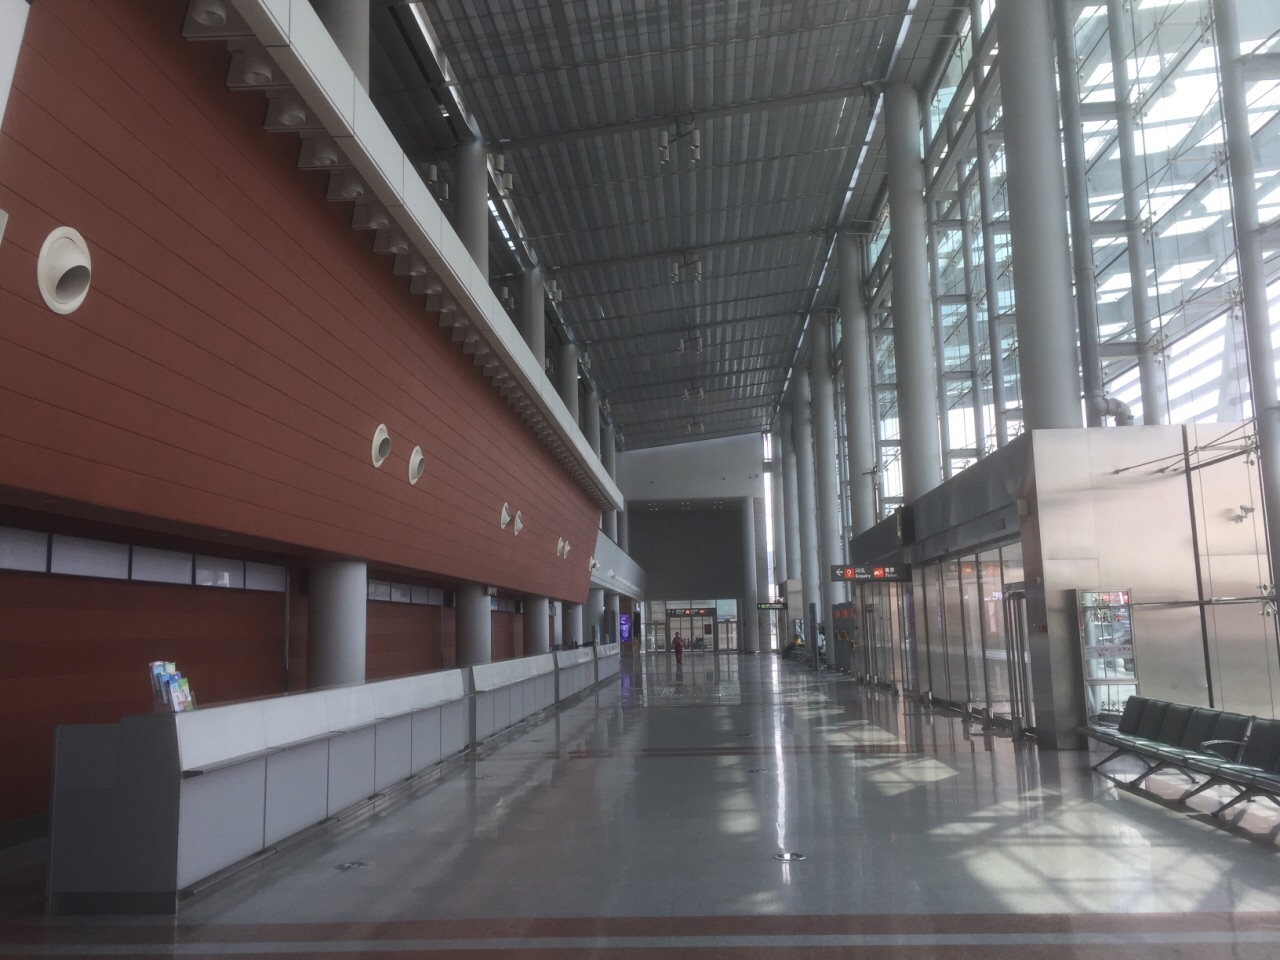 【携程攻略】晋江机场怎么样/怎么去,晋江机场用户点评/评价